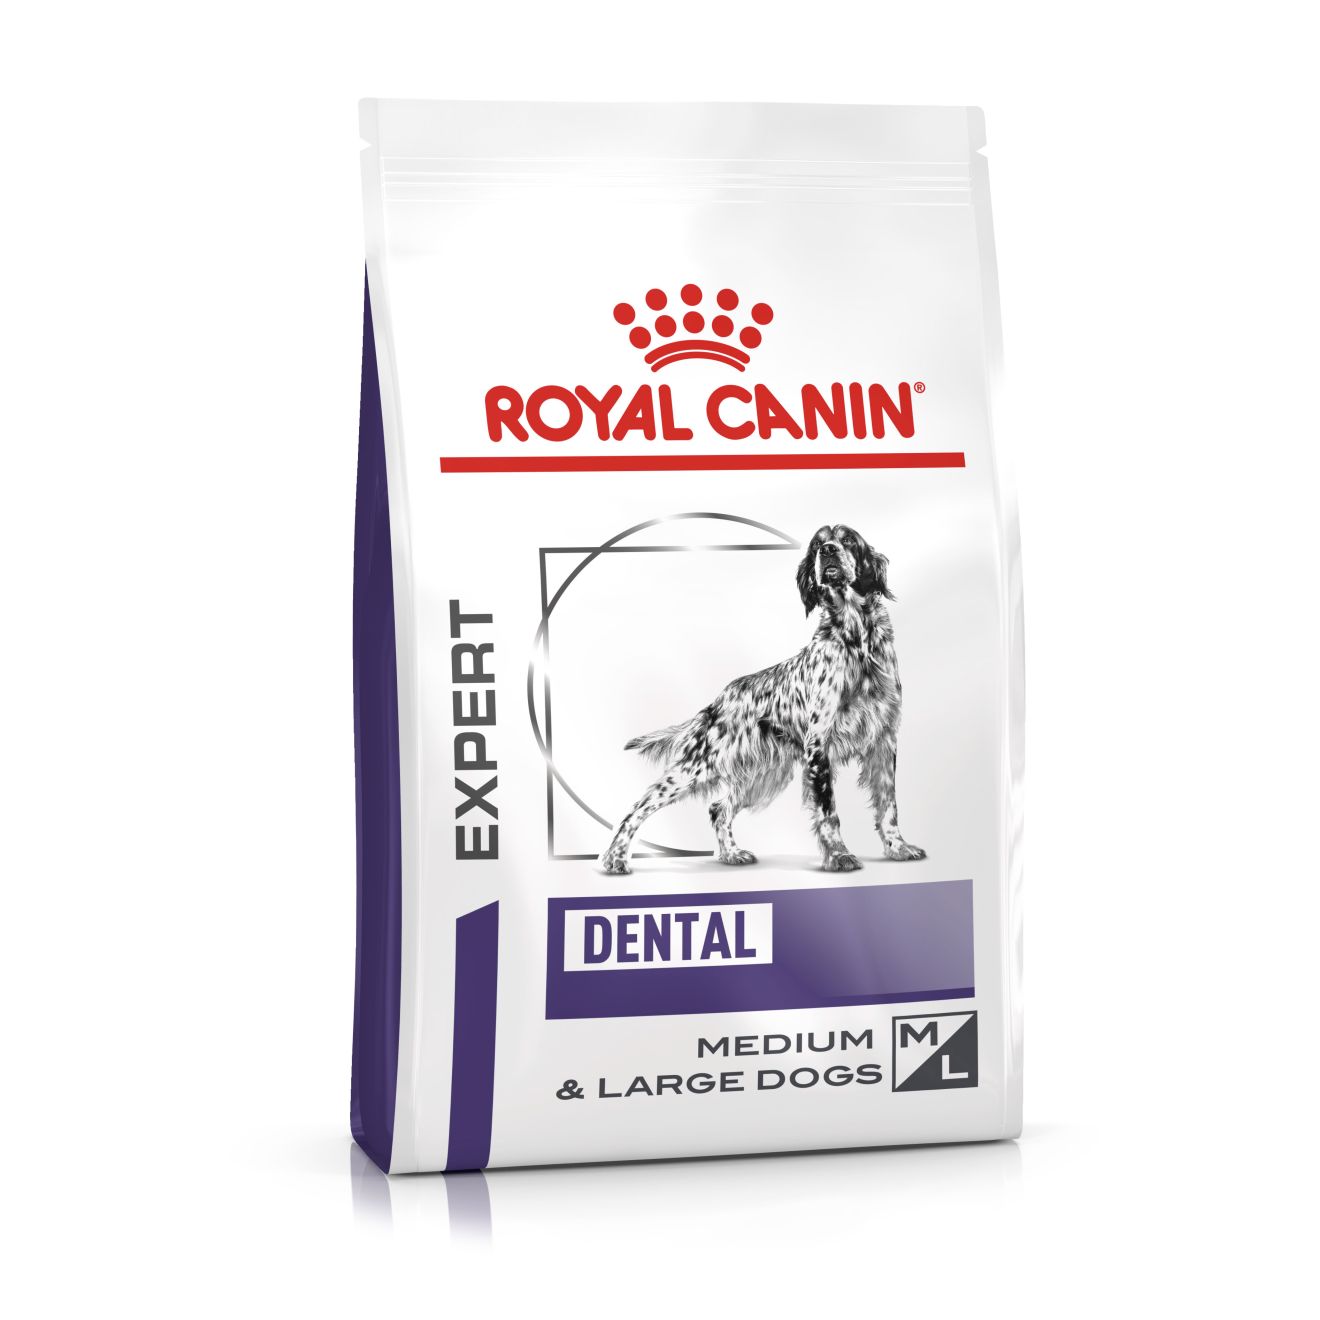 ROYAL CANIN Expert DENTAL MEDIUM & LARGE DOGS  Trockenfutter für Hunde 6 kg (Hund)